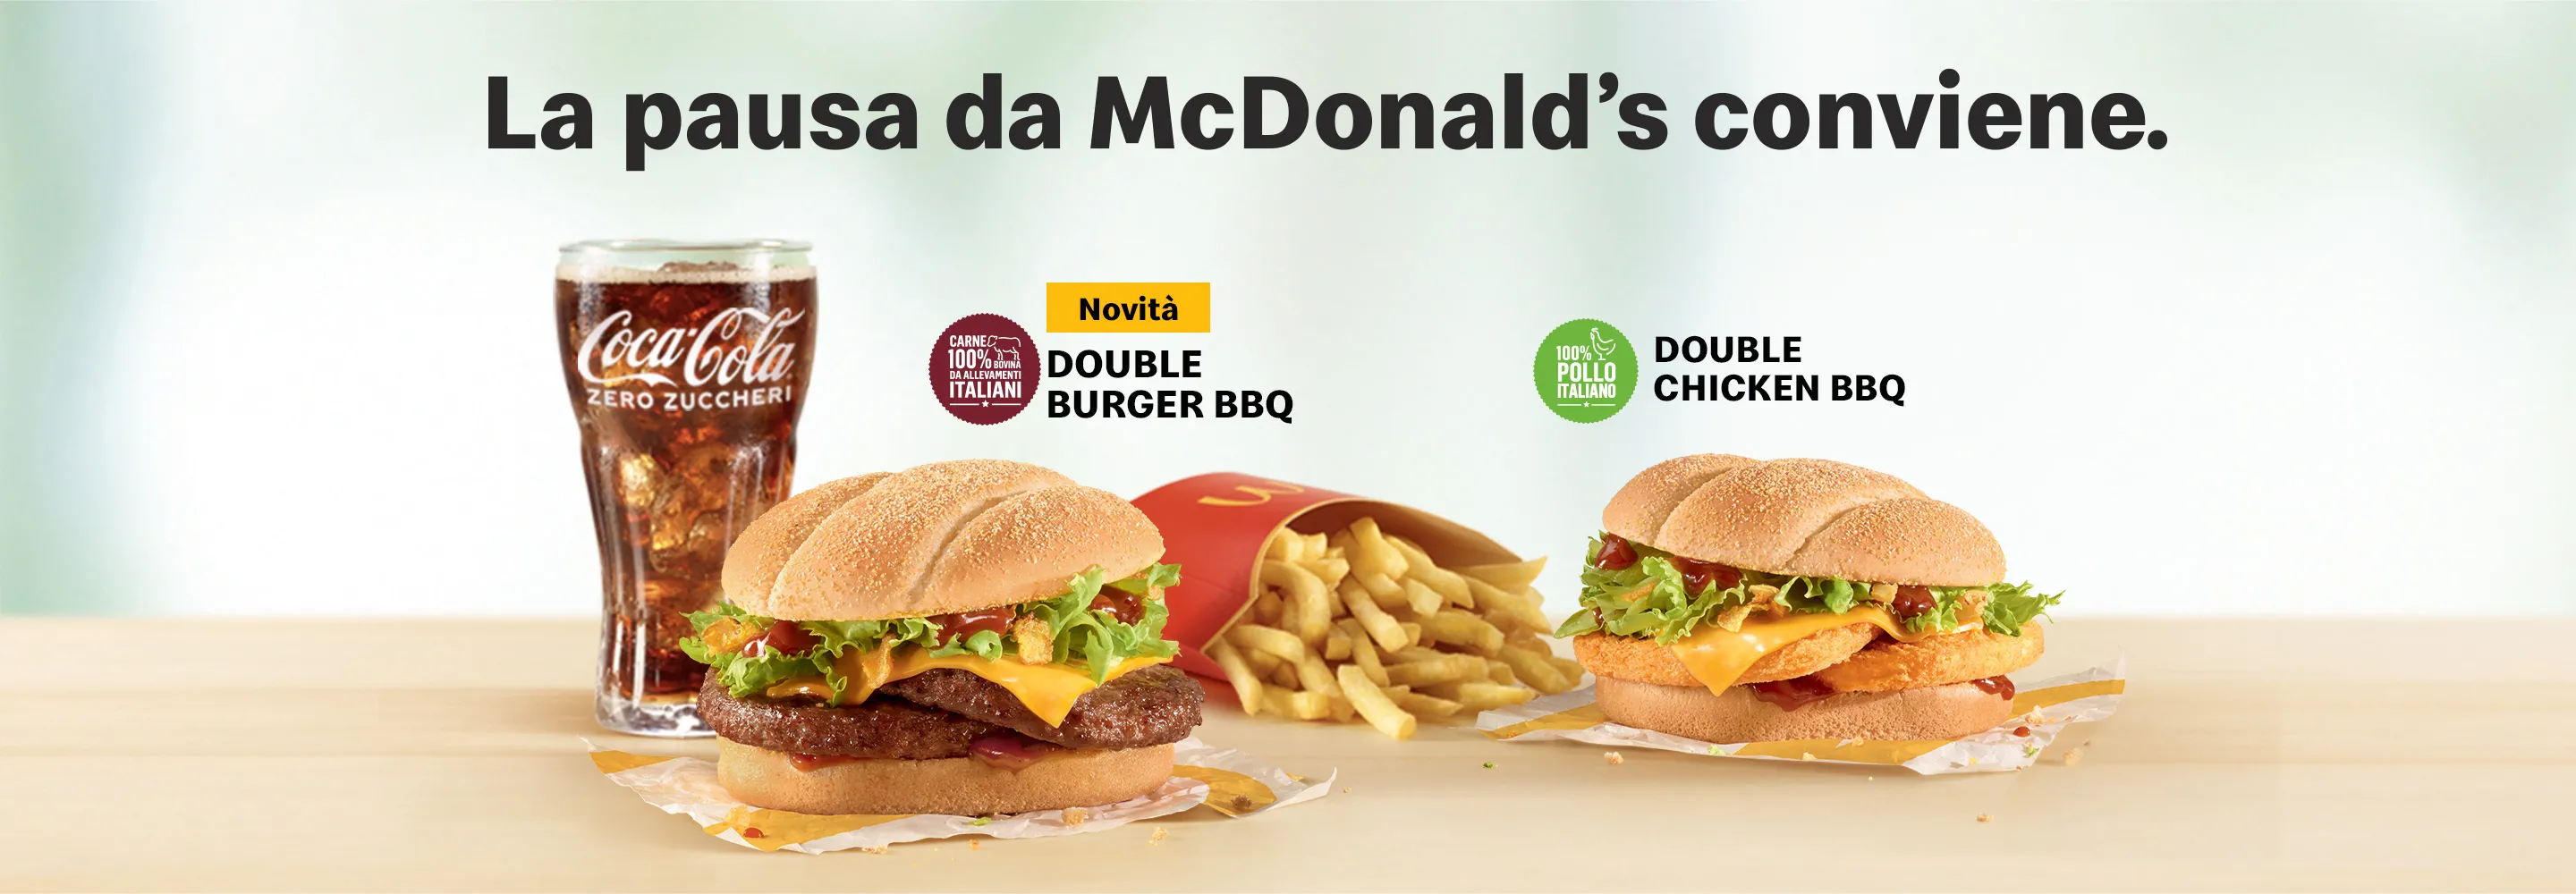 La pausa da McDonald’s conviene.